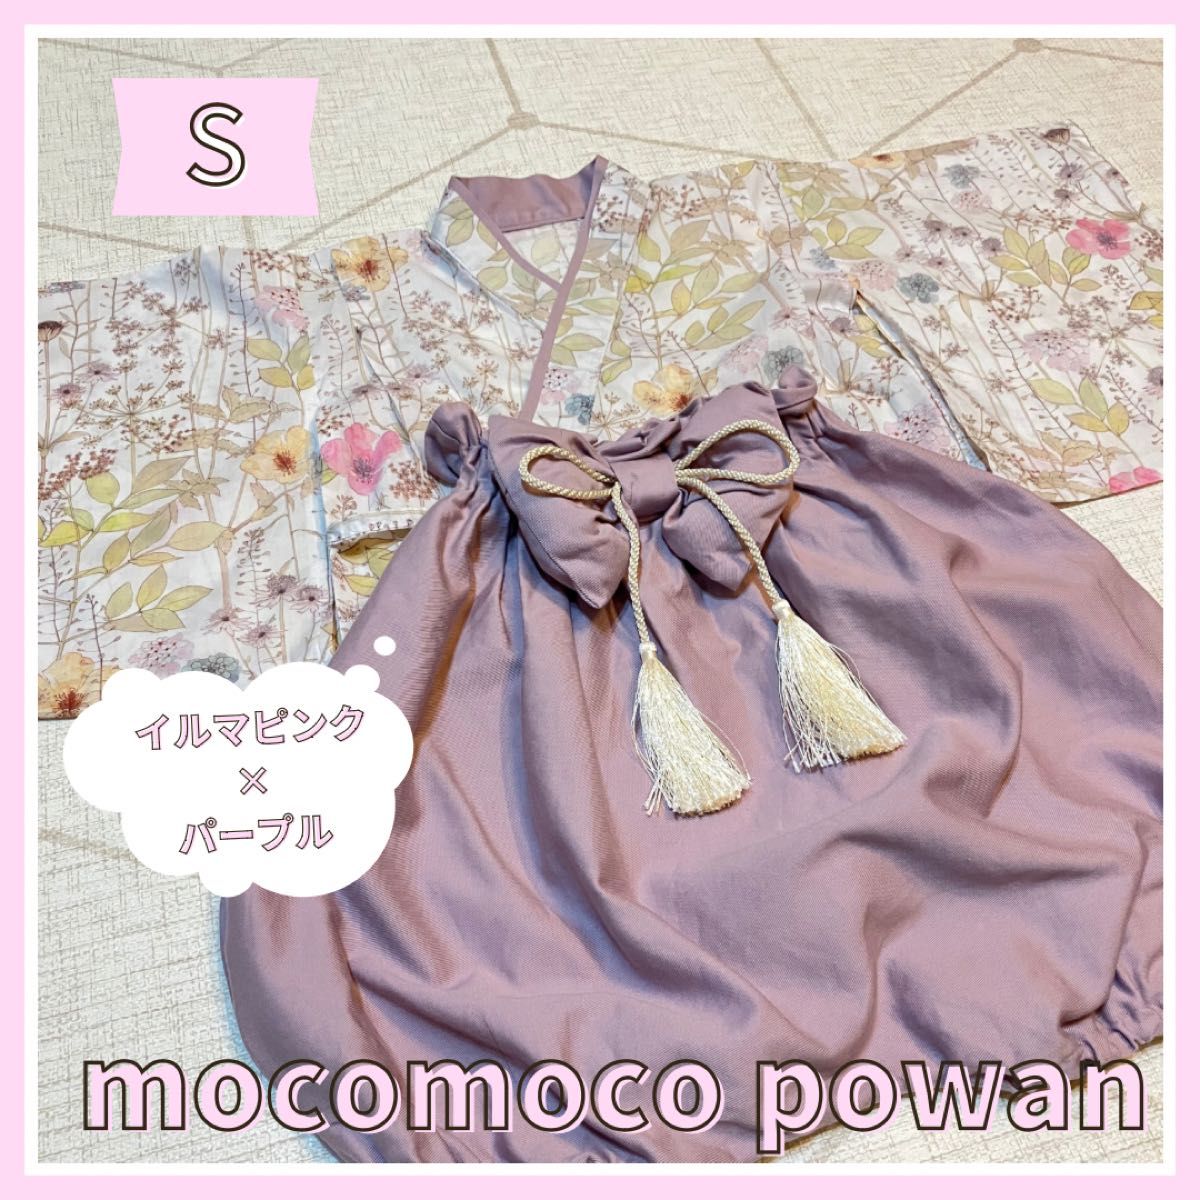 mocomoco powan ぽわんパンツの袴 イルマピンク×パープル Sサイズ